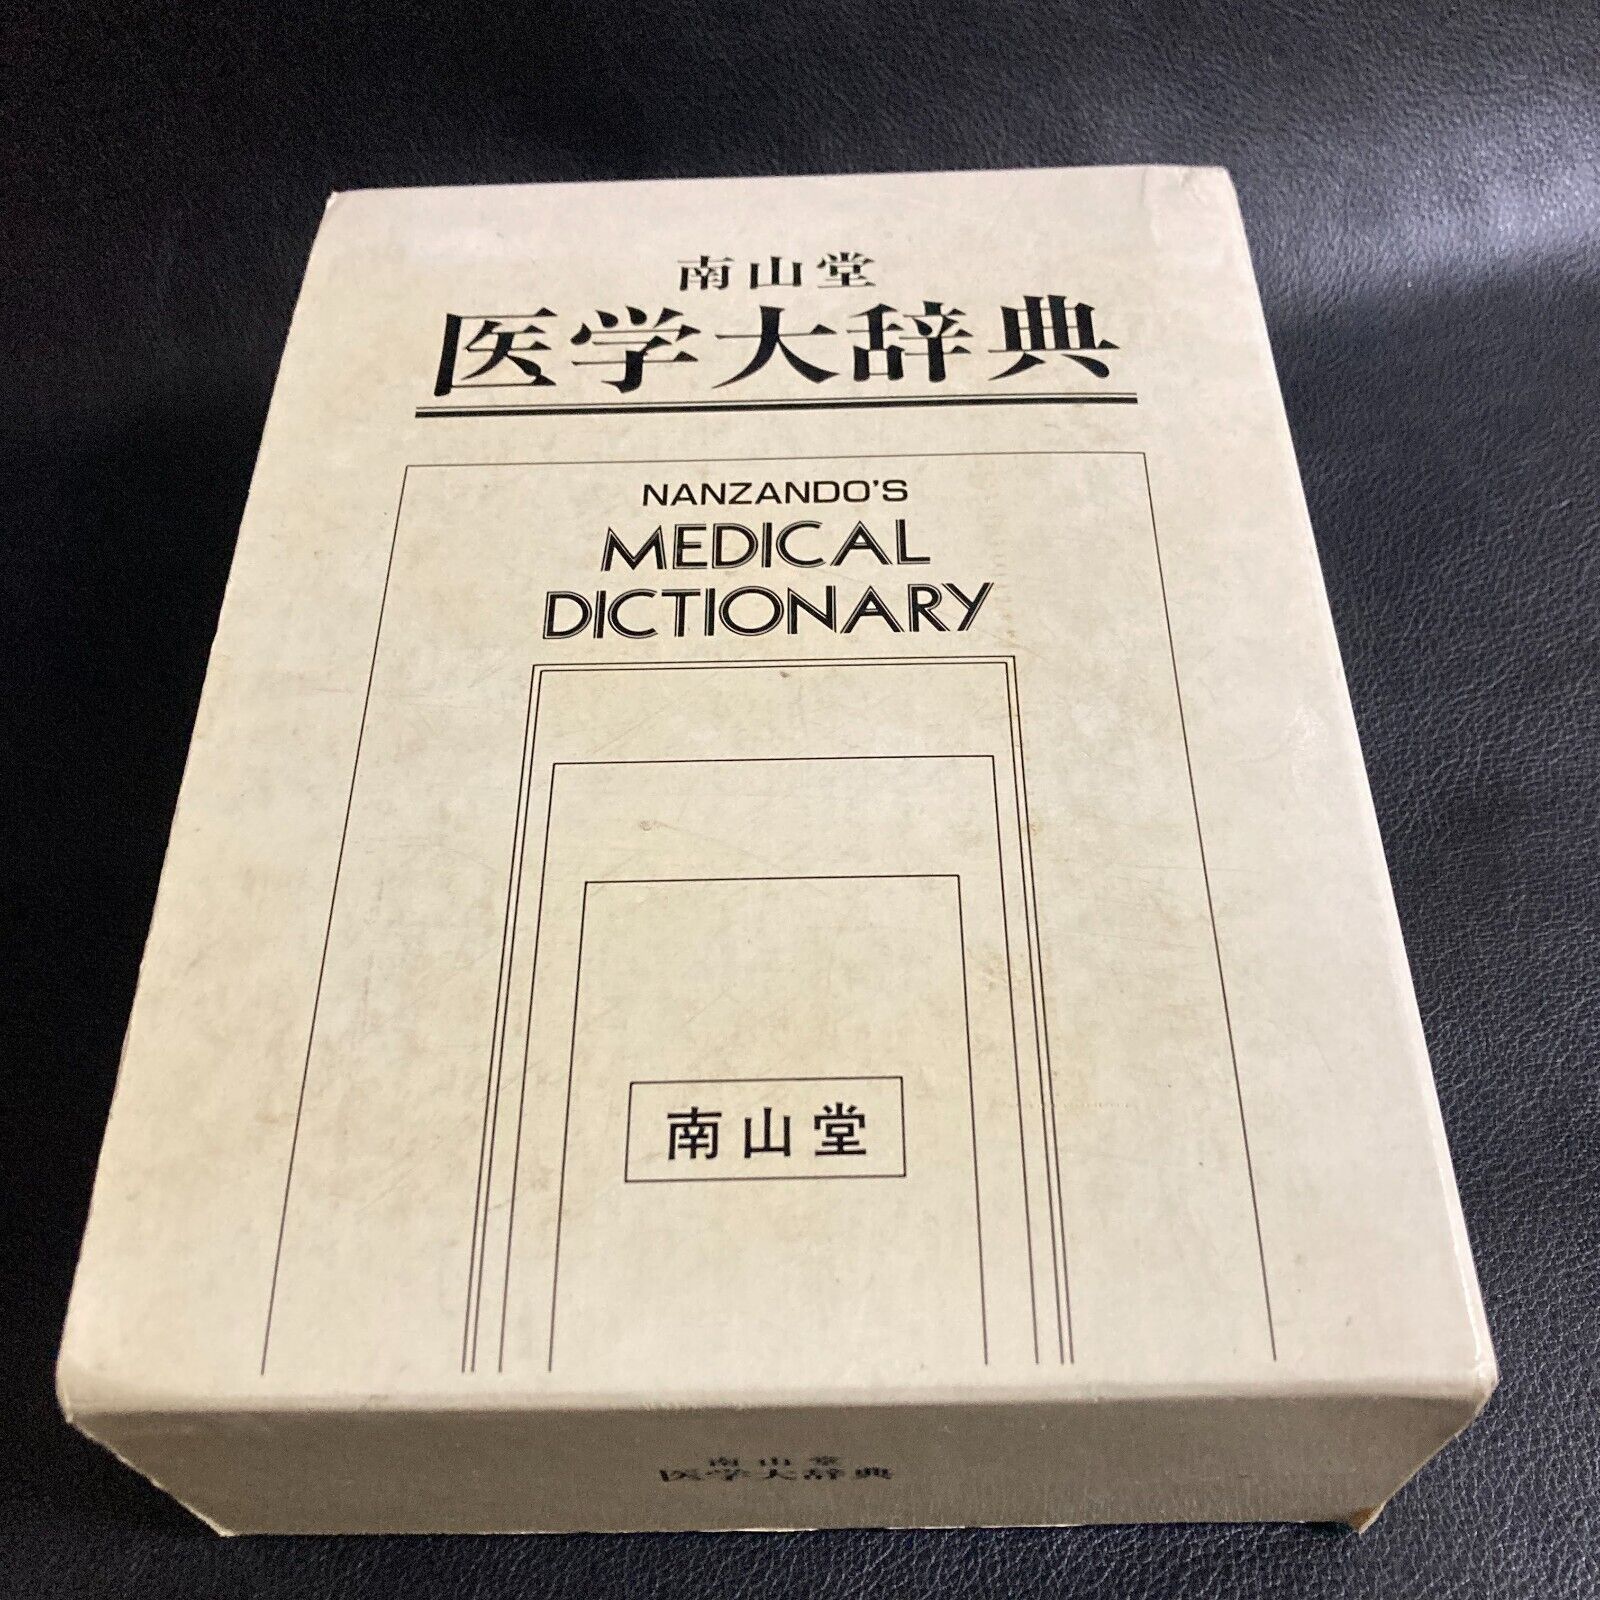 NANZANDO MEDICAL DICTIONARY Japanese and English language japan book